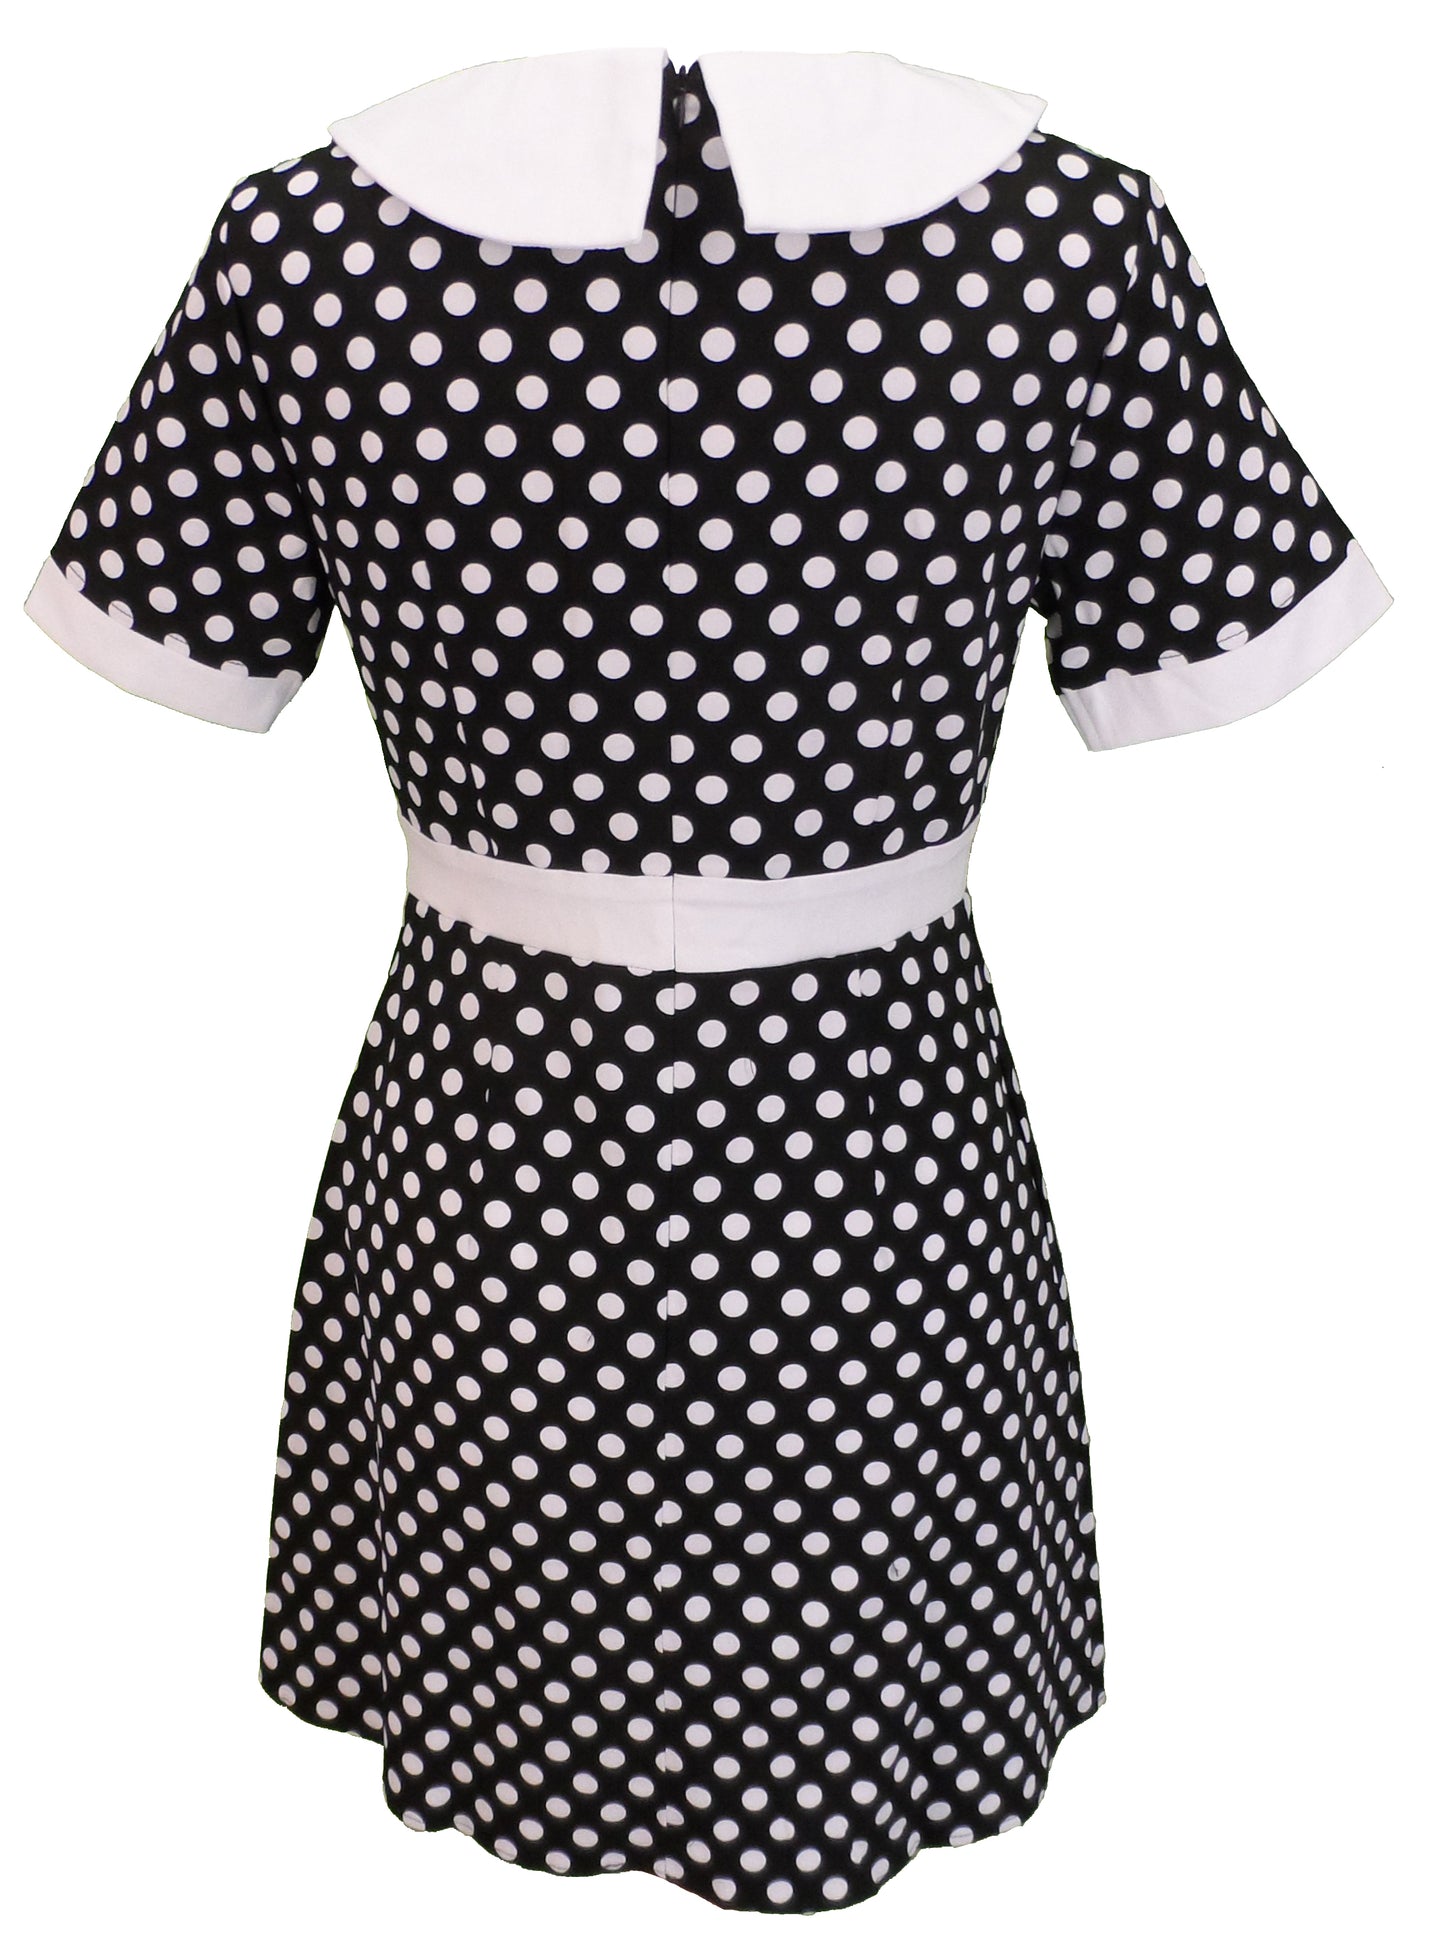 Schwarz-weiß gepunktetes Damenkleid im Retro-Mod-Vintage-Stil der 60er Jahre